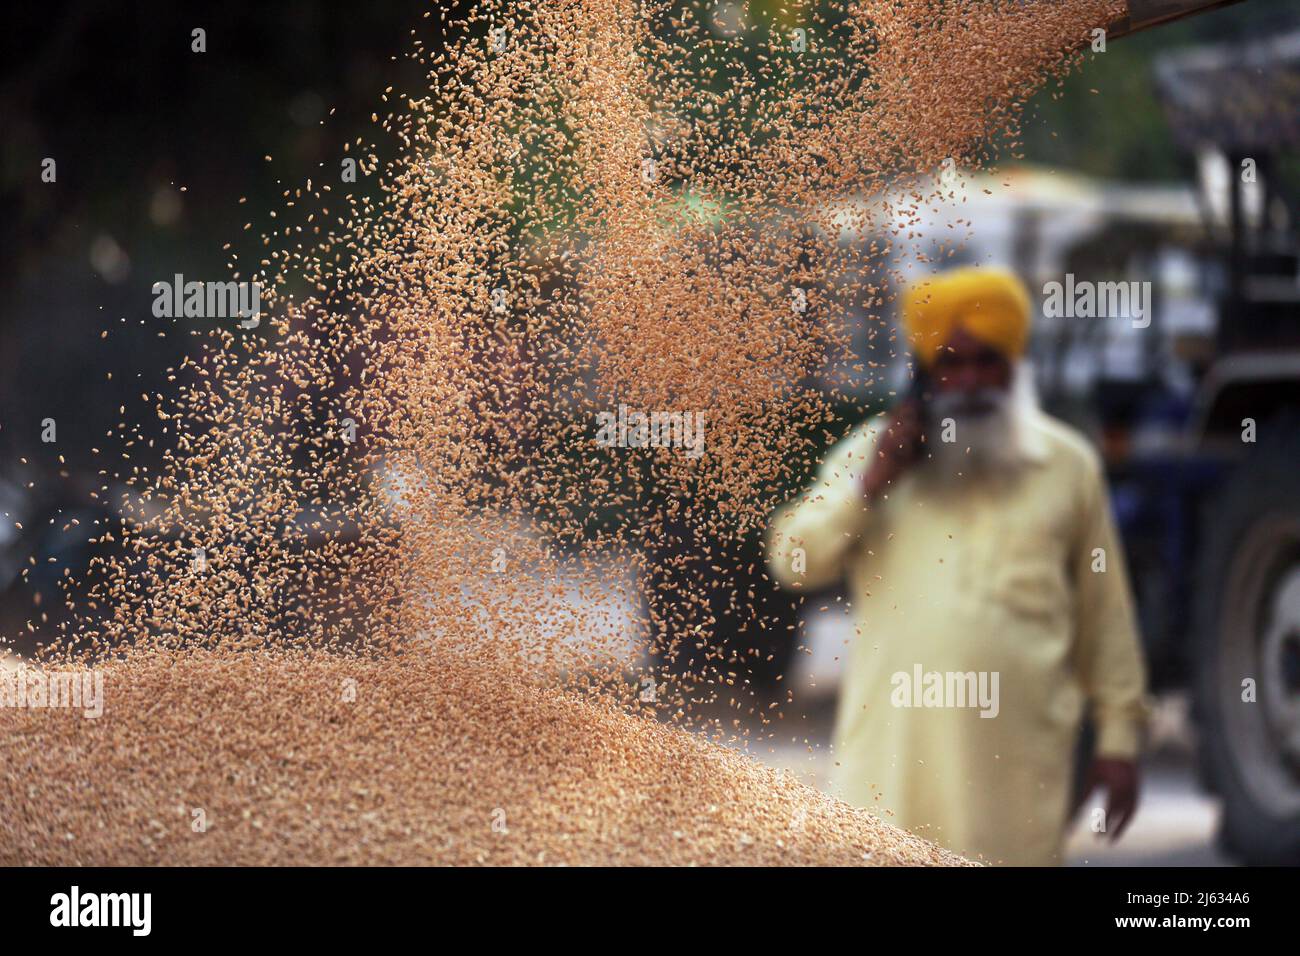 (220427) -- PEKING, 27. April 2022 (Xinhua) -- Ein Landwirt spricht auf seinem Handy, als sein frisch geernteter Weizen auf dem Getreidemarkt im Distrikt Amritsar im nördlichen Bundesstaat Punjab in Indien von einem Wagen entladen wird, 19. April 2022. Der Konflikt zwischen Russland und der Ukraine hat den Rohstoffmärkten „einen großen Schock“ verursacht und die globalen Muster von Handel, Produktion und Konsum verändert, sagte die Weltbank in einem am 26. April 2022 veröffentlichten Bericht. DIE WELTBANK warnt vor einem Anstieg der Nahrungsmittel- und Energiepreise aufgrund des Russland-Ukraine-Konflikts (Str/Xinhua) Stockfoto